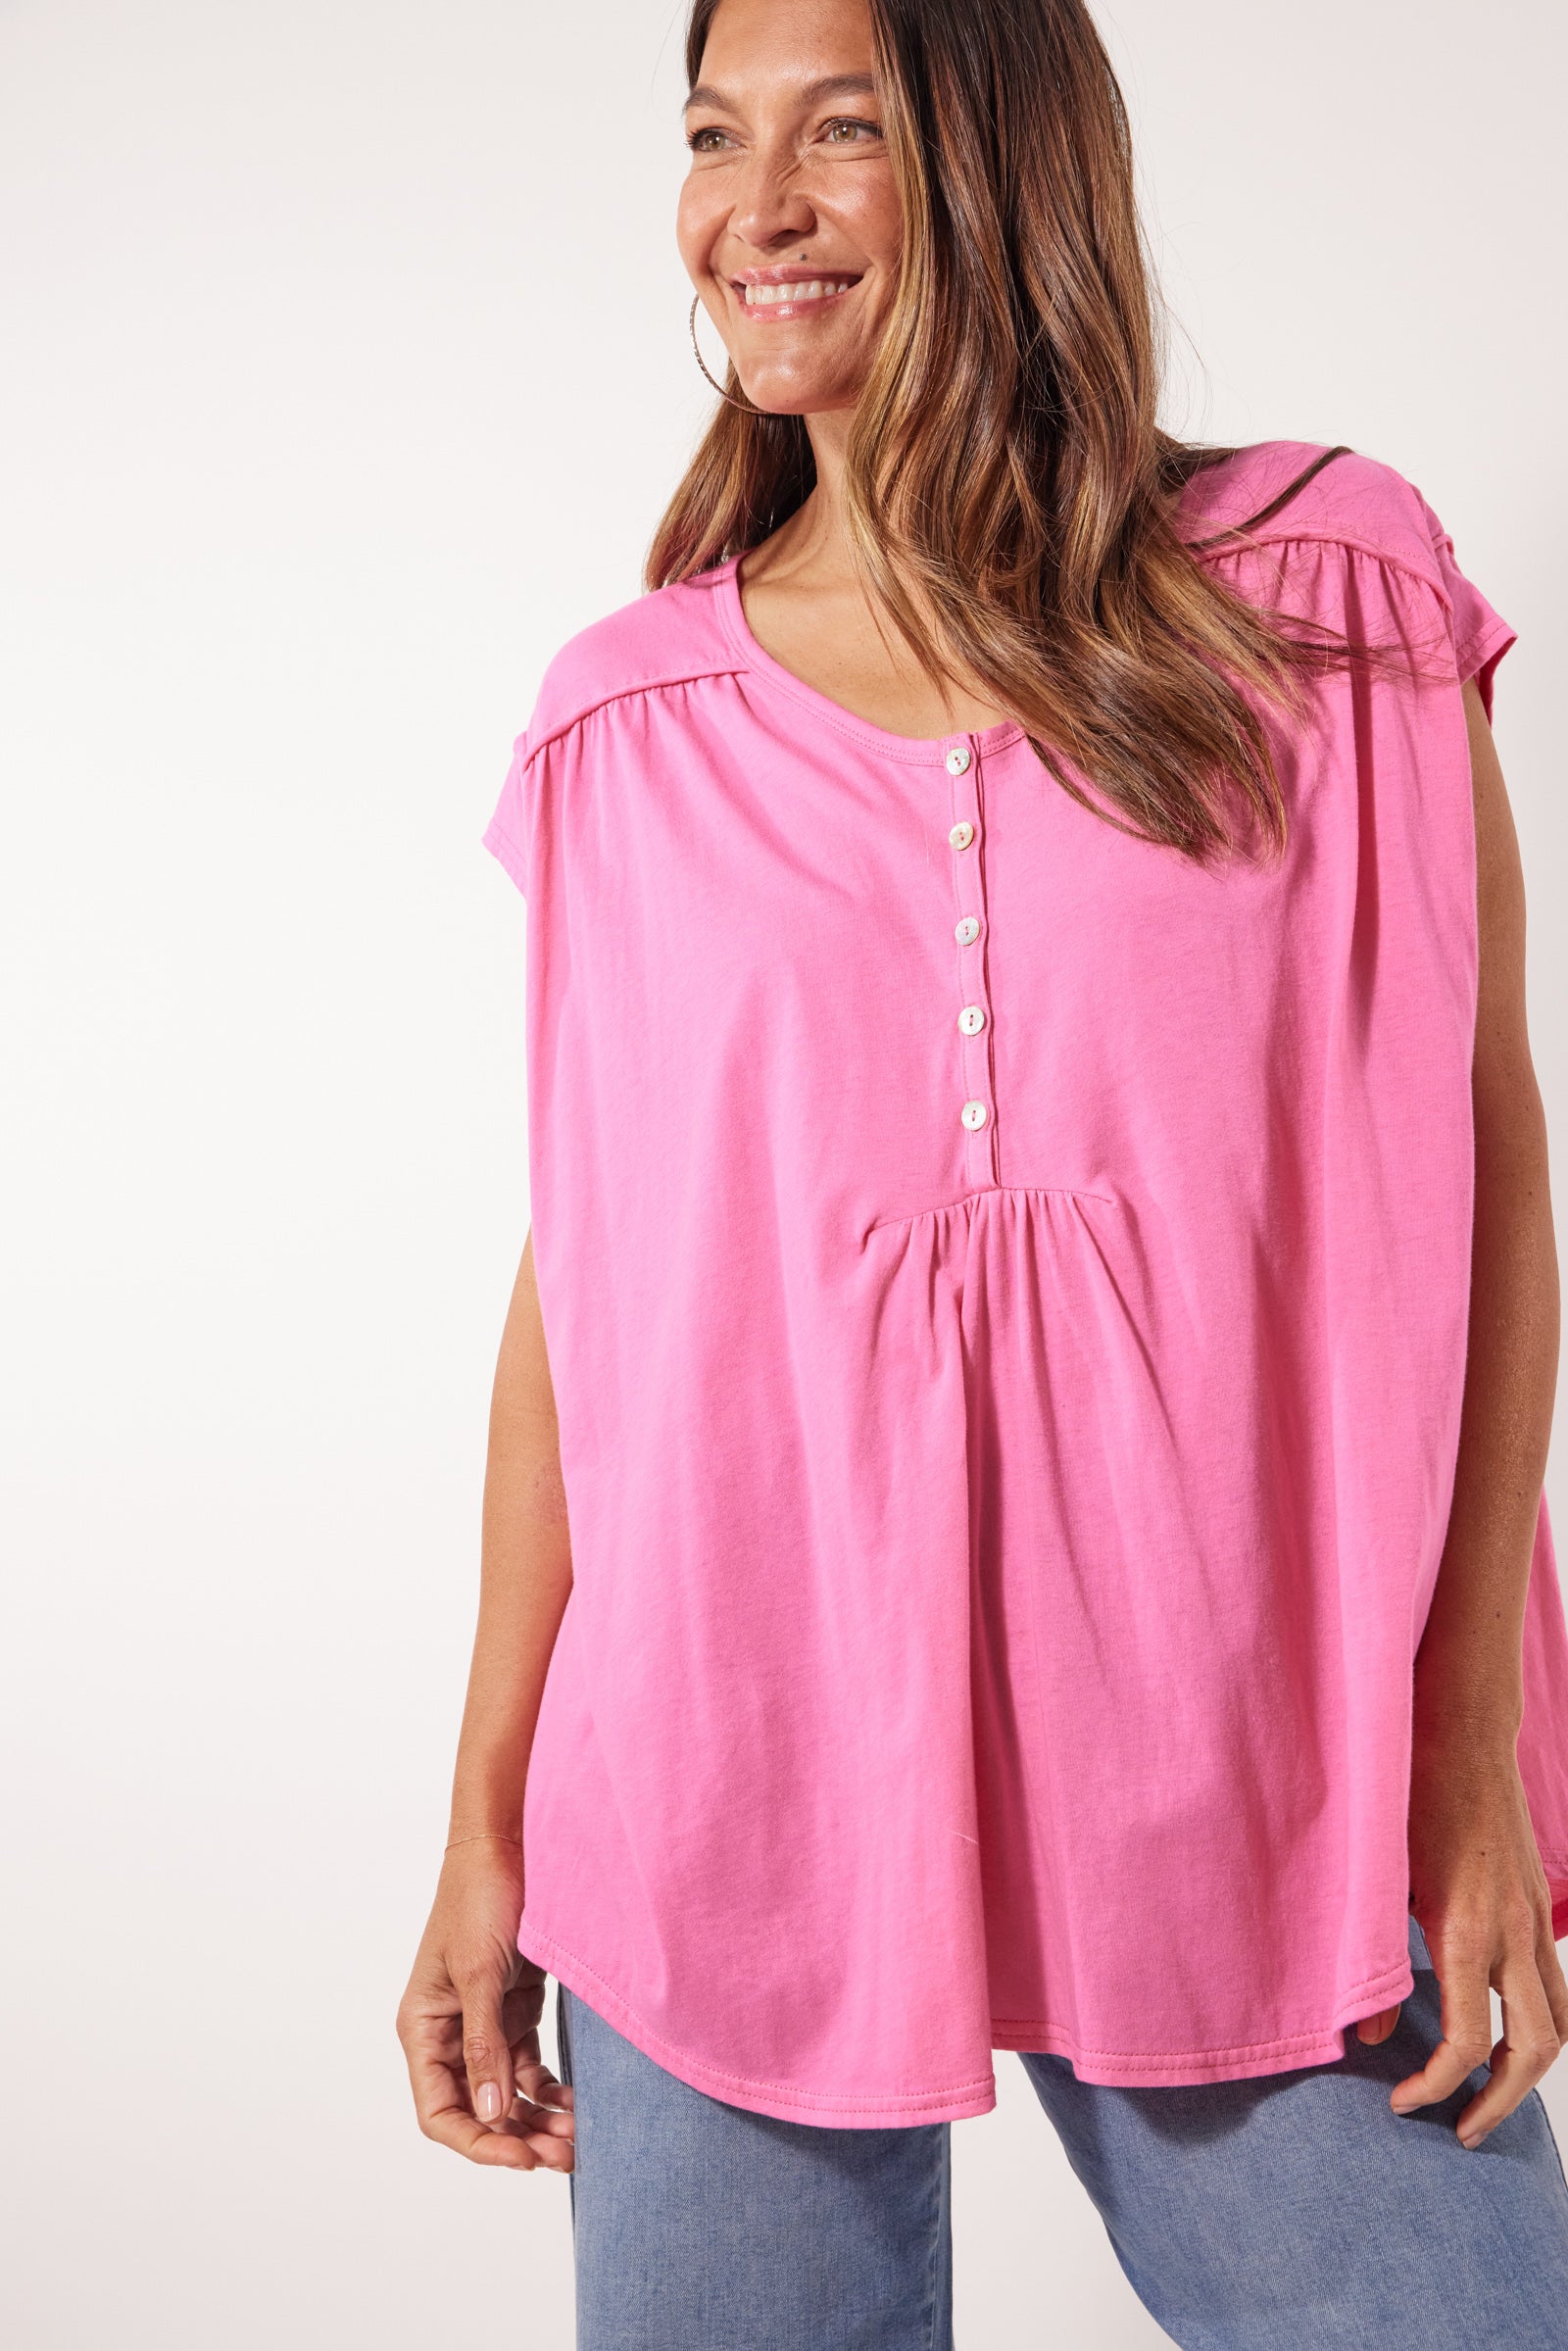 Tisane Tshirt - Camelia - Isle of Mine Clothing - Top Tshirt S/S One Size